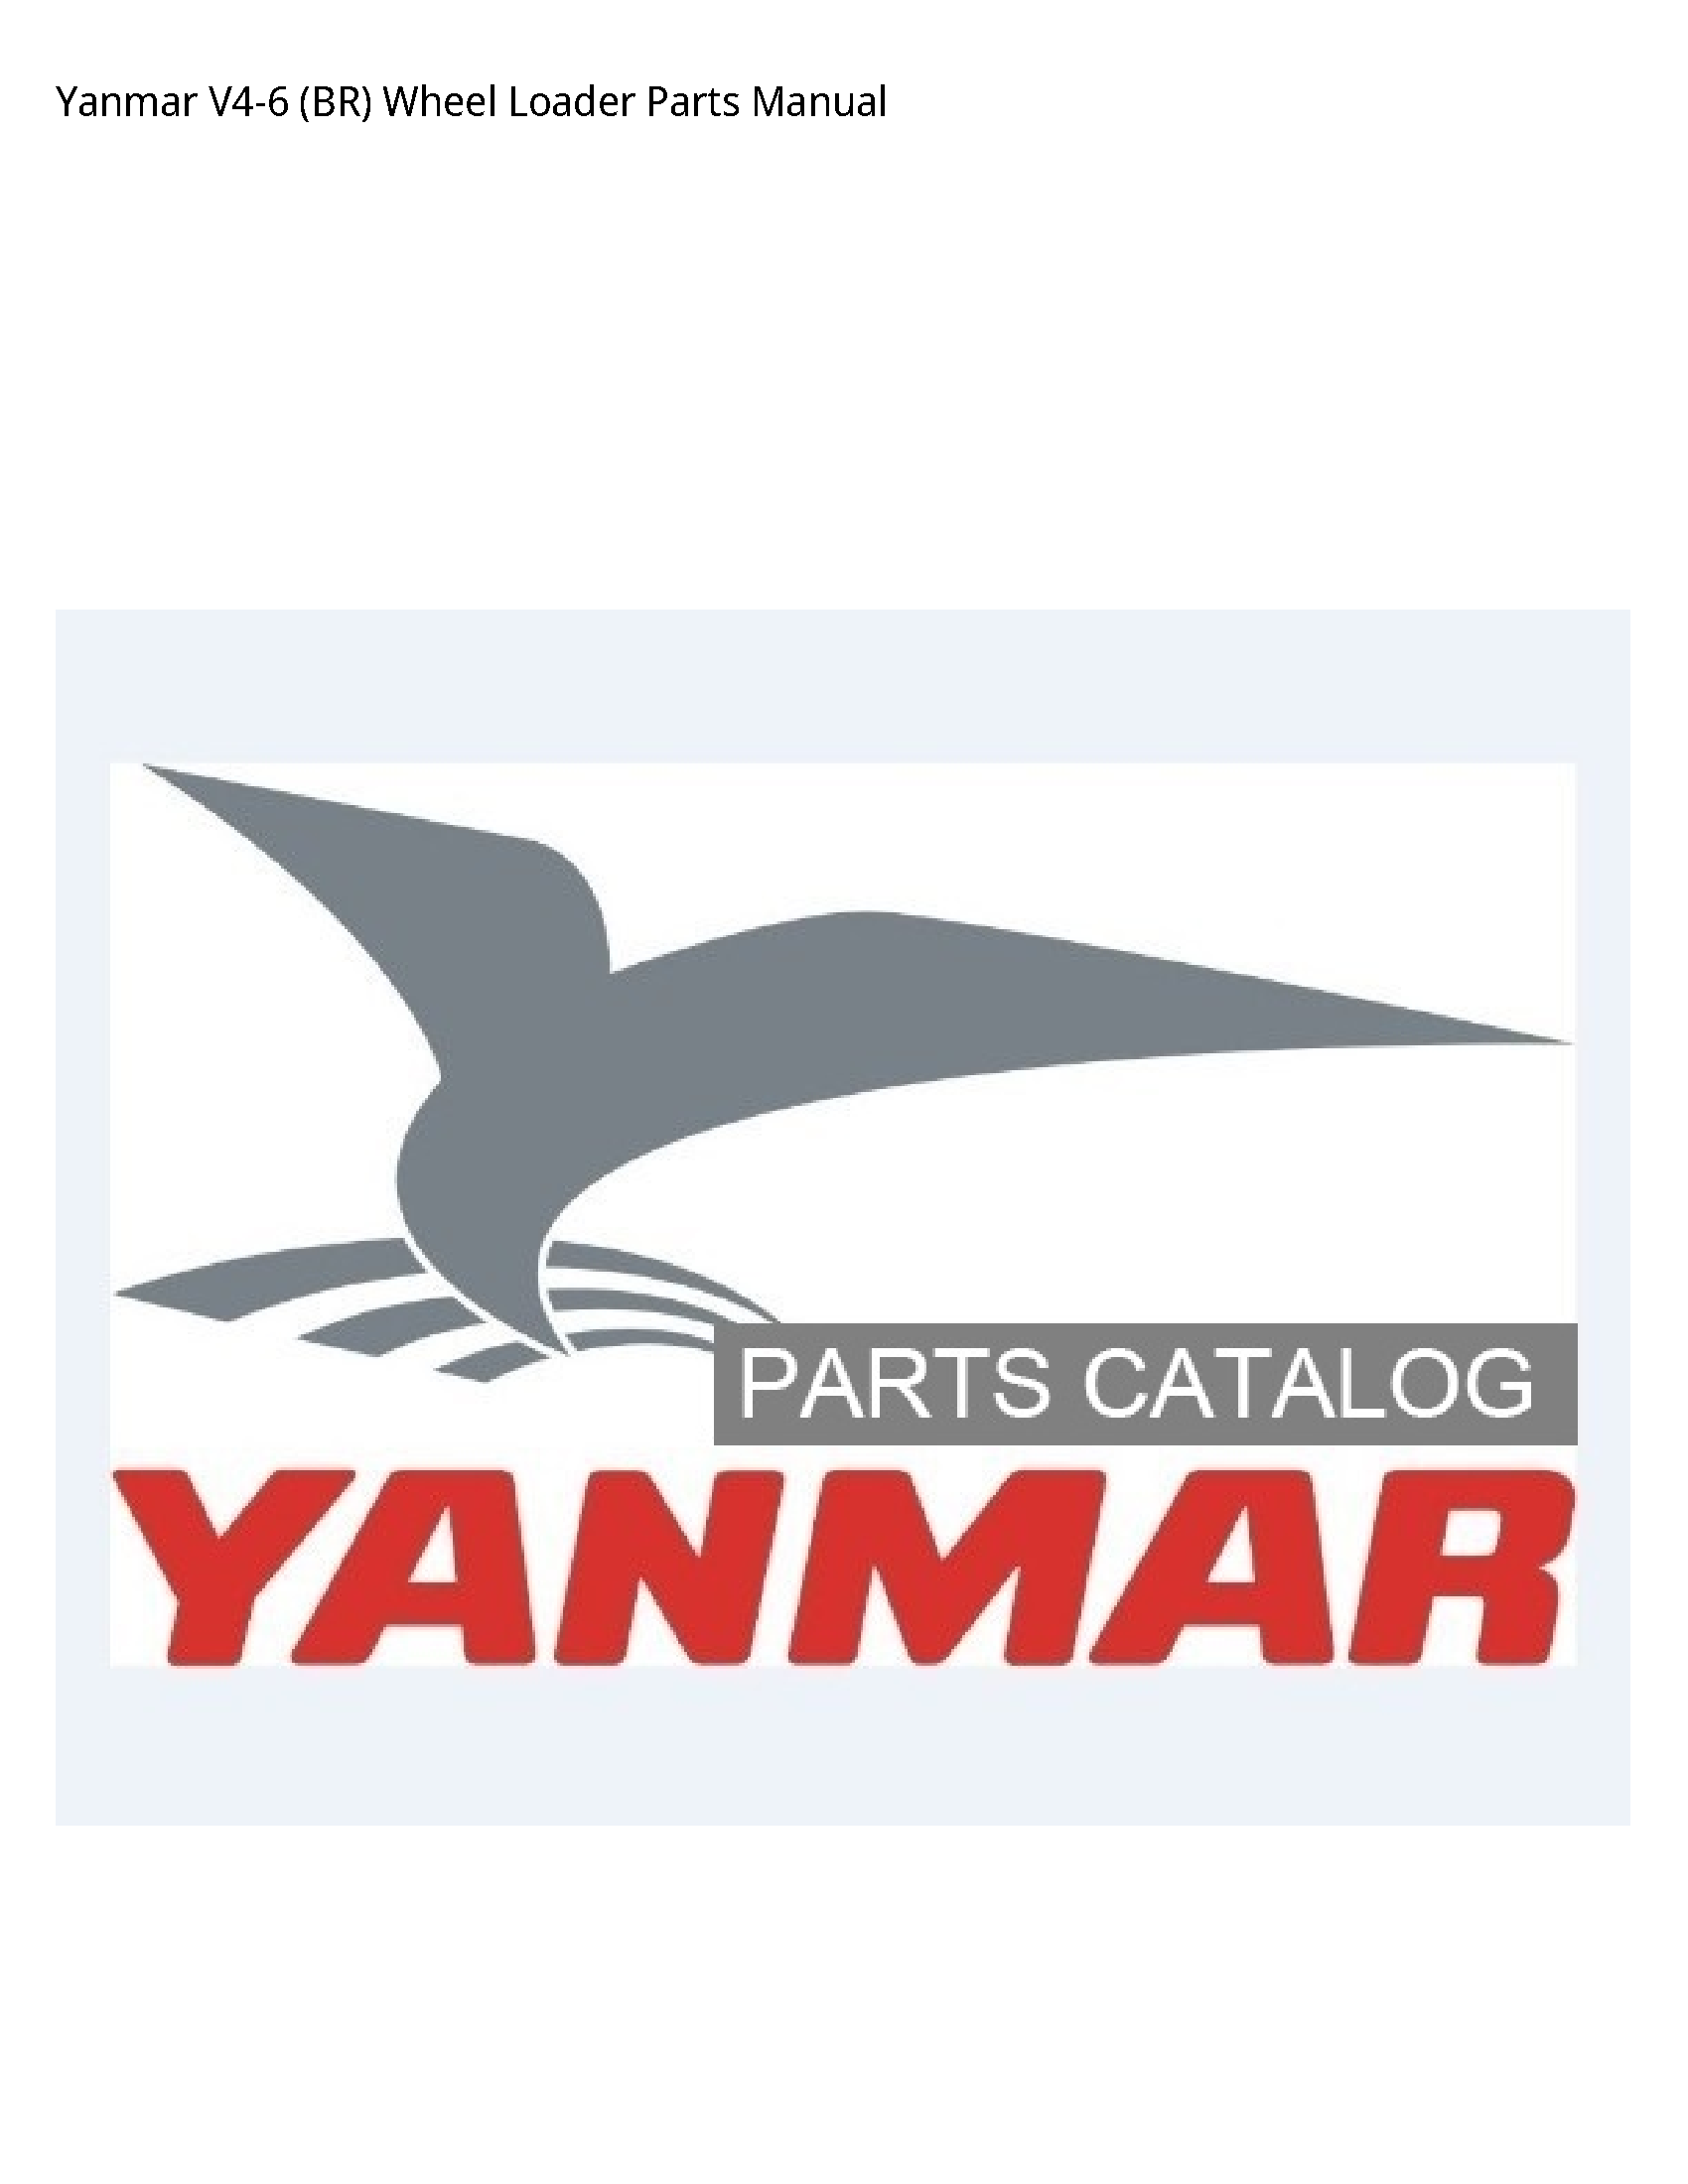 Yanmar V4-6 (BR) Wheel Loader Parts manual